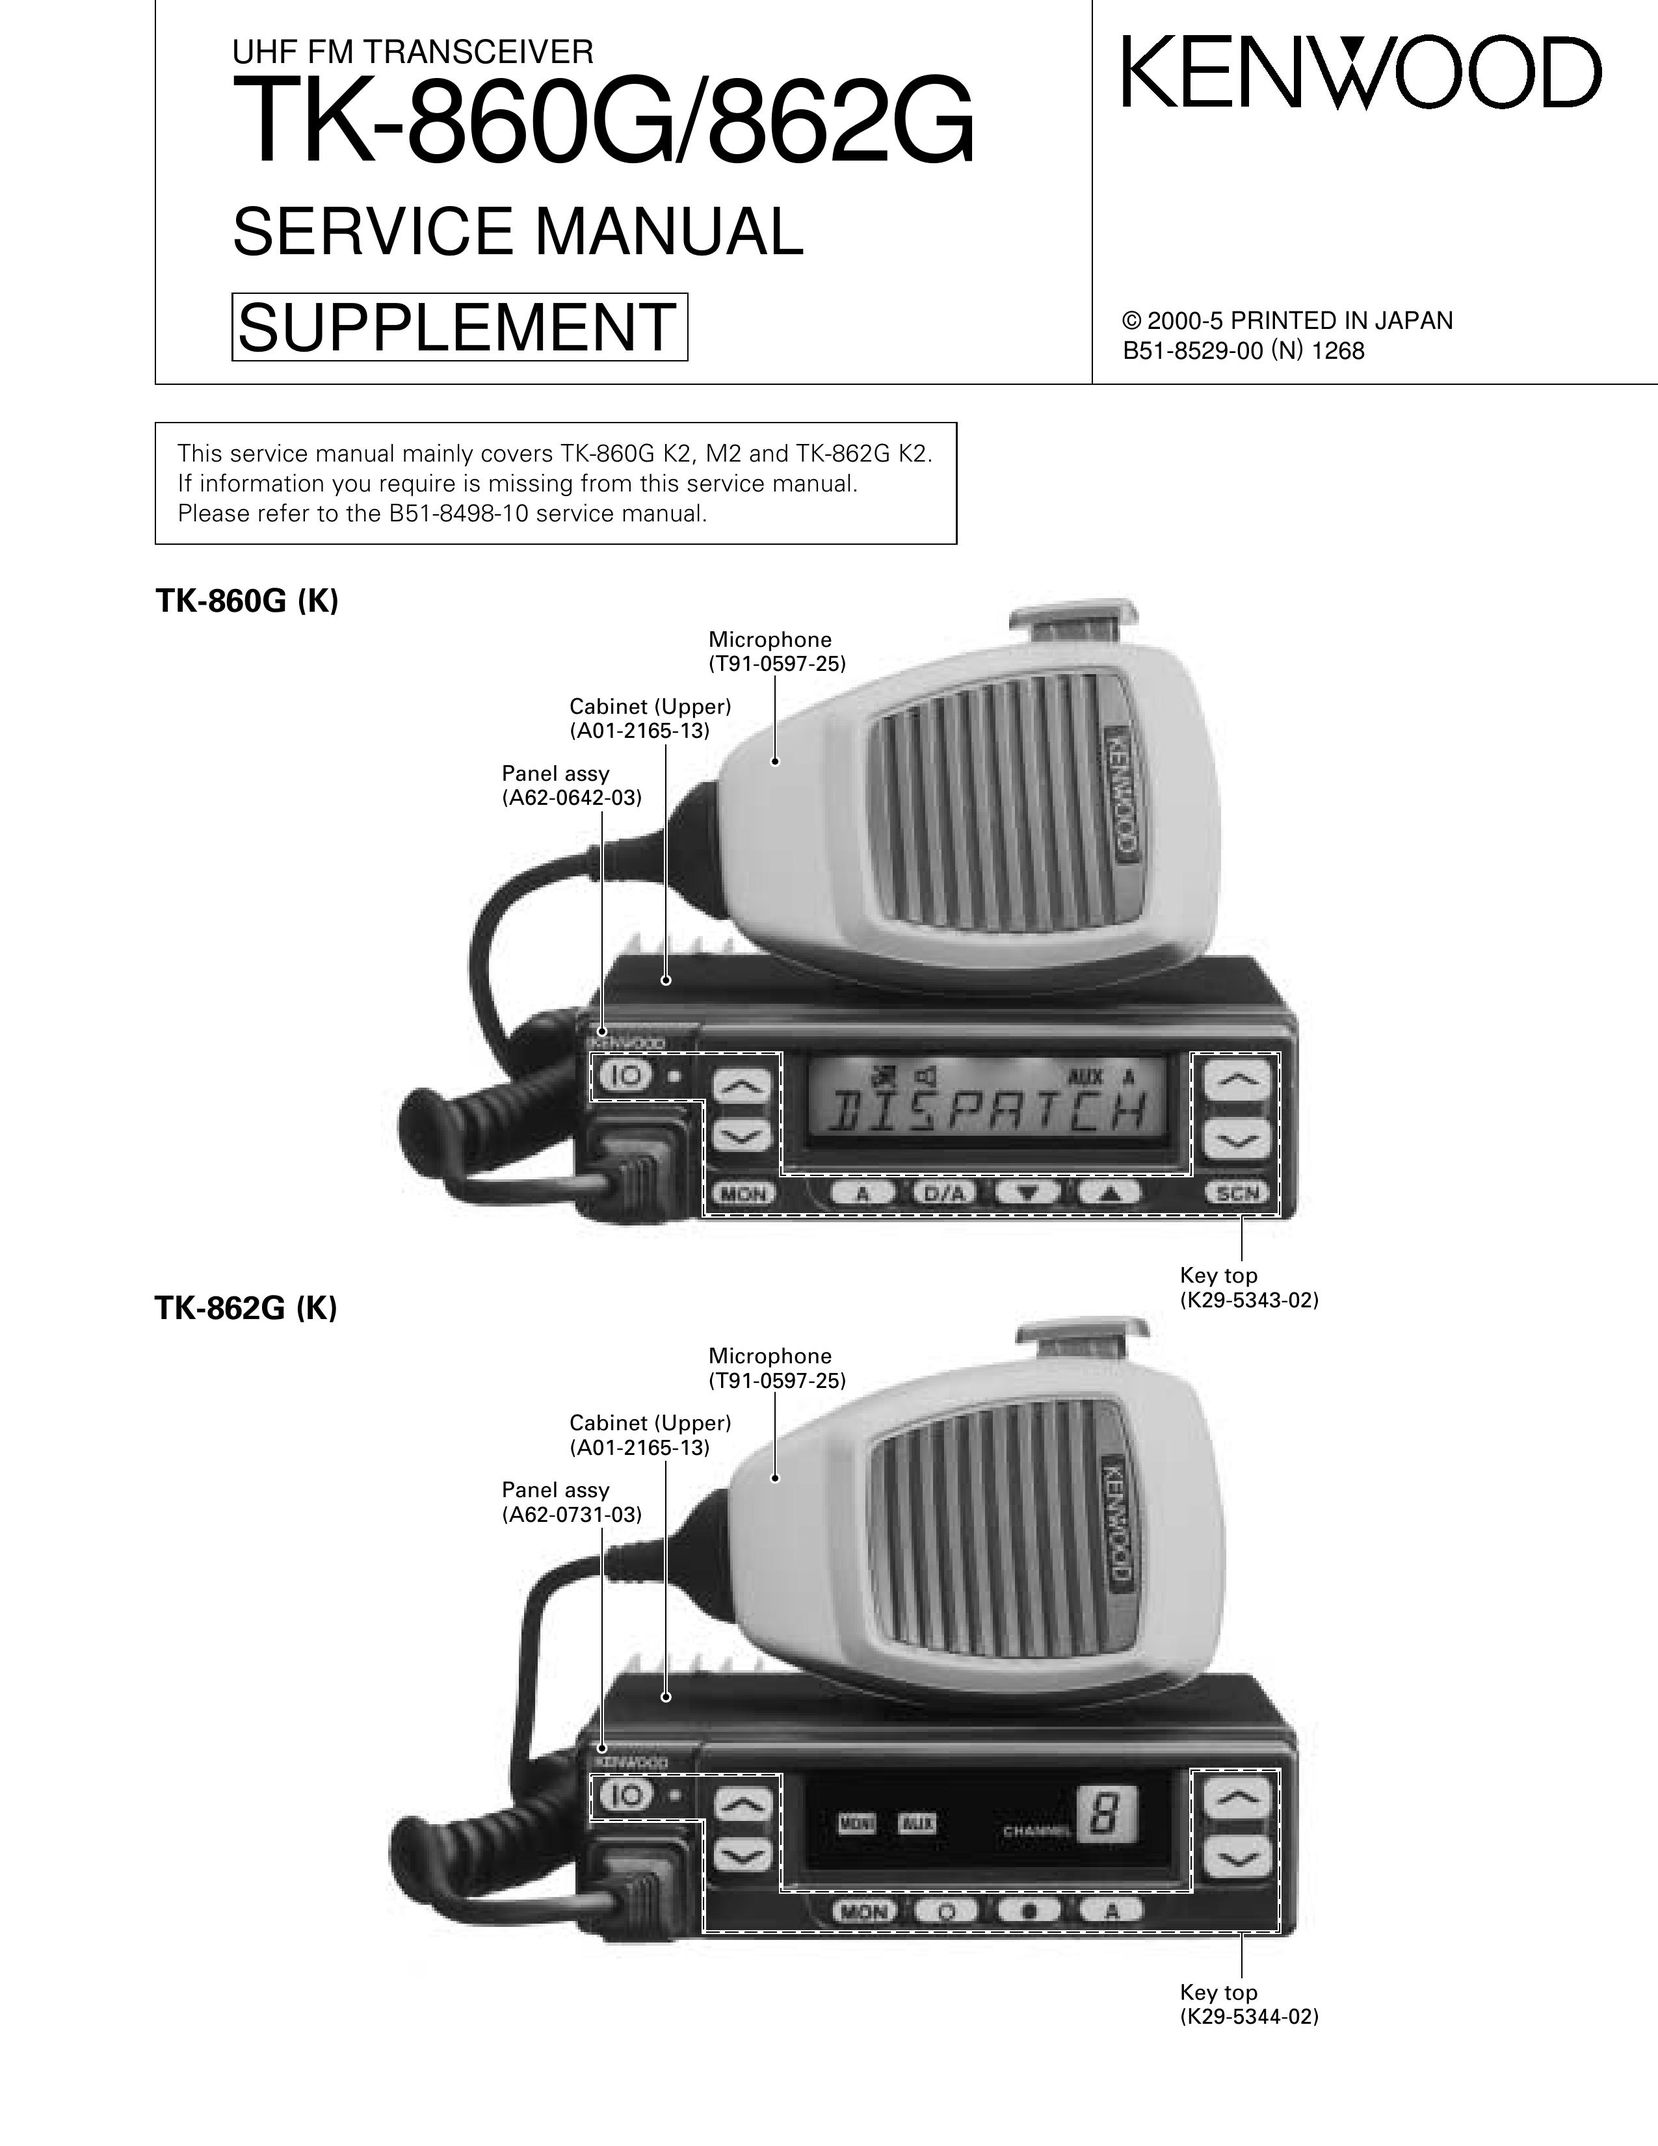 Kenwood TK-860G Portable Radio User Manual